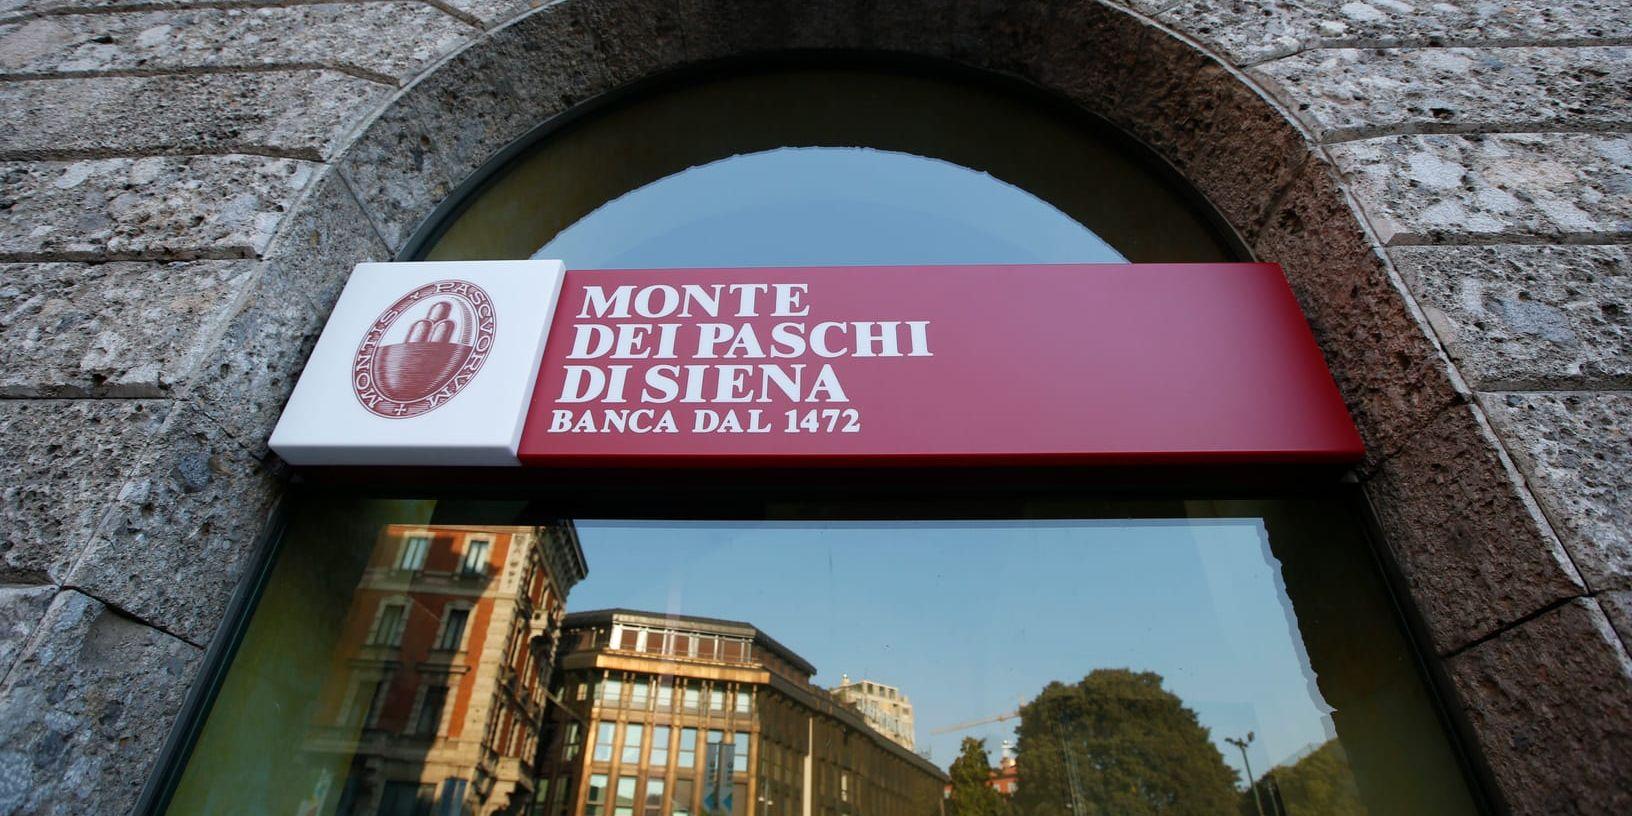 Monte dei Paschi di Siena, världens äldsta bank, har stora problem med dåliga lån. Men Europeiska centralbanken (ECB) har godkänt en räddningsplan för banken. Arkivbild.